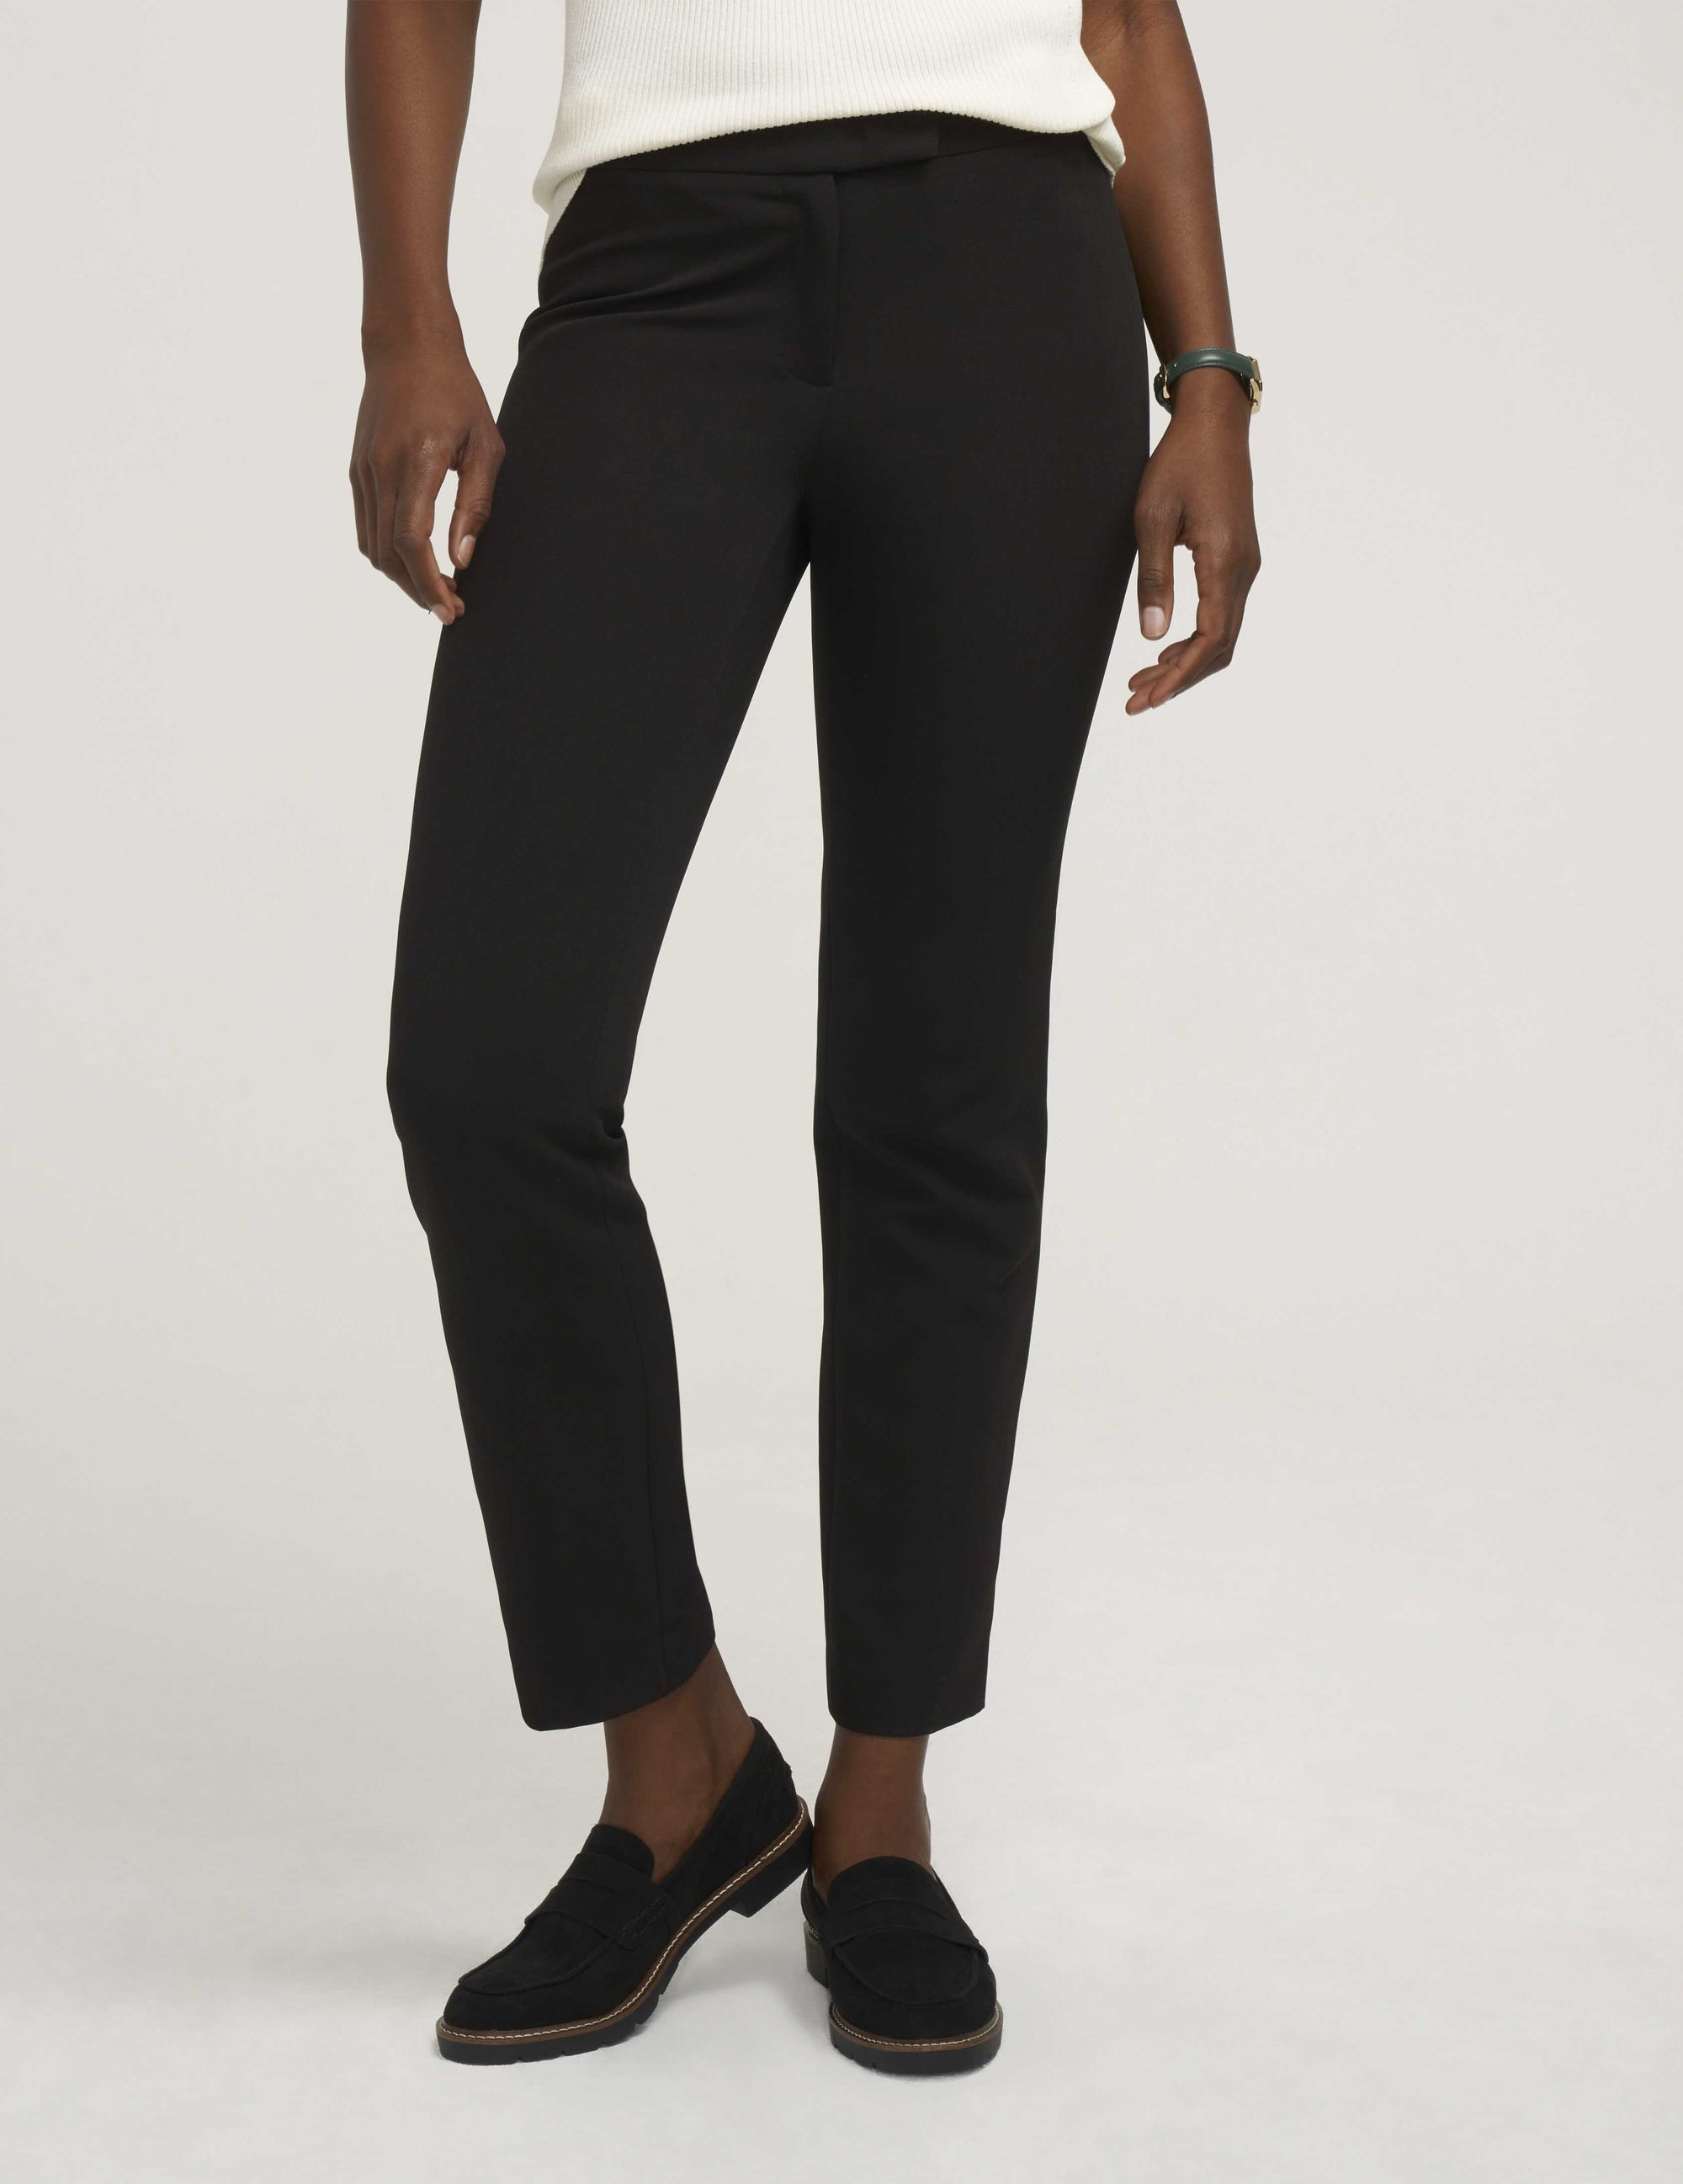 ANNE KLEIN womens WORK WEAR BLACK DRESS PANTS size 10 flat fronts